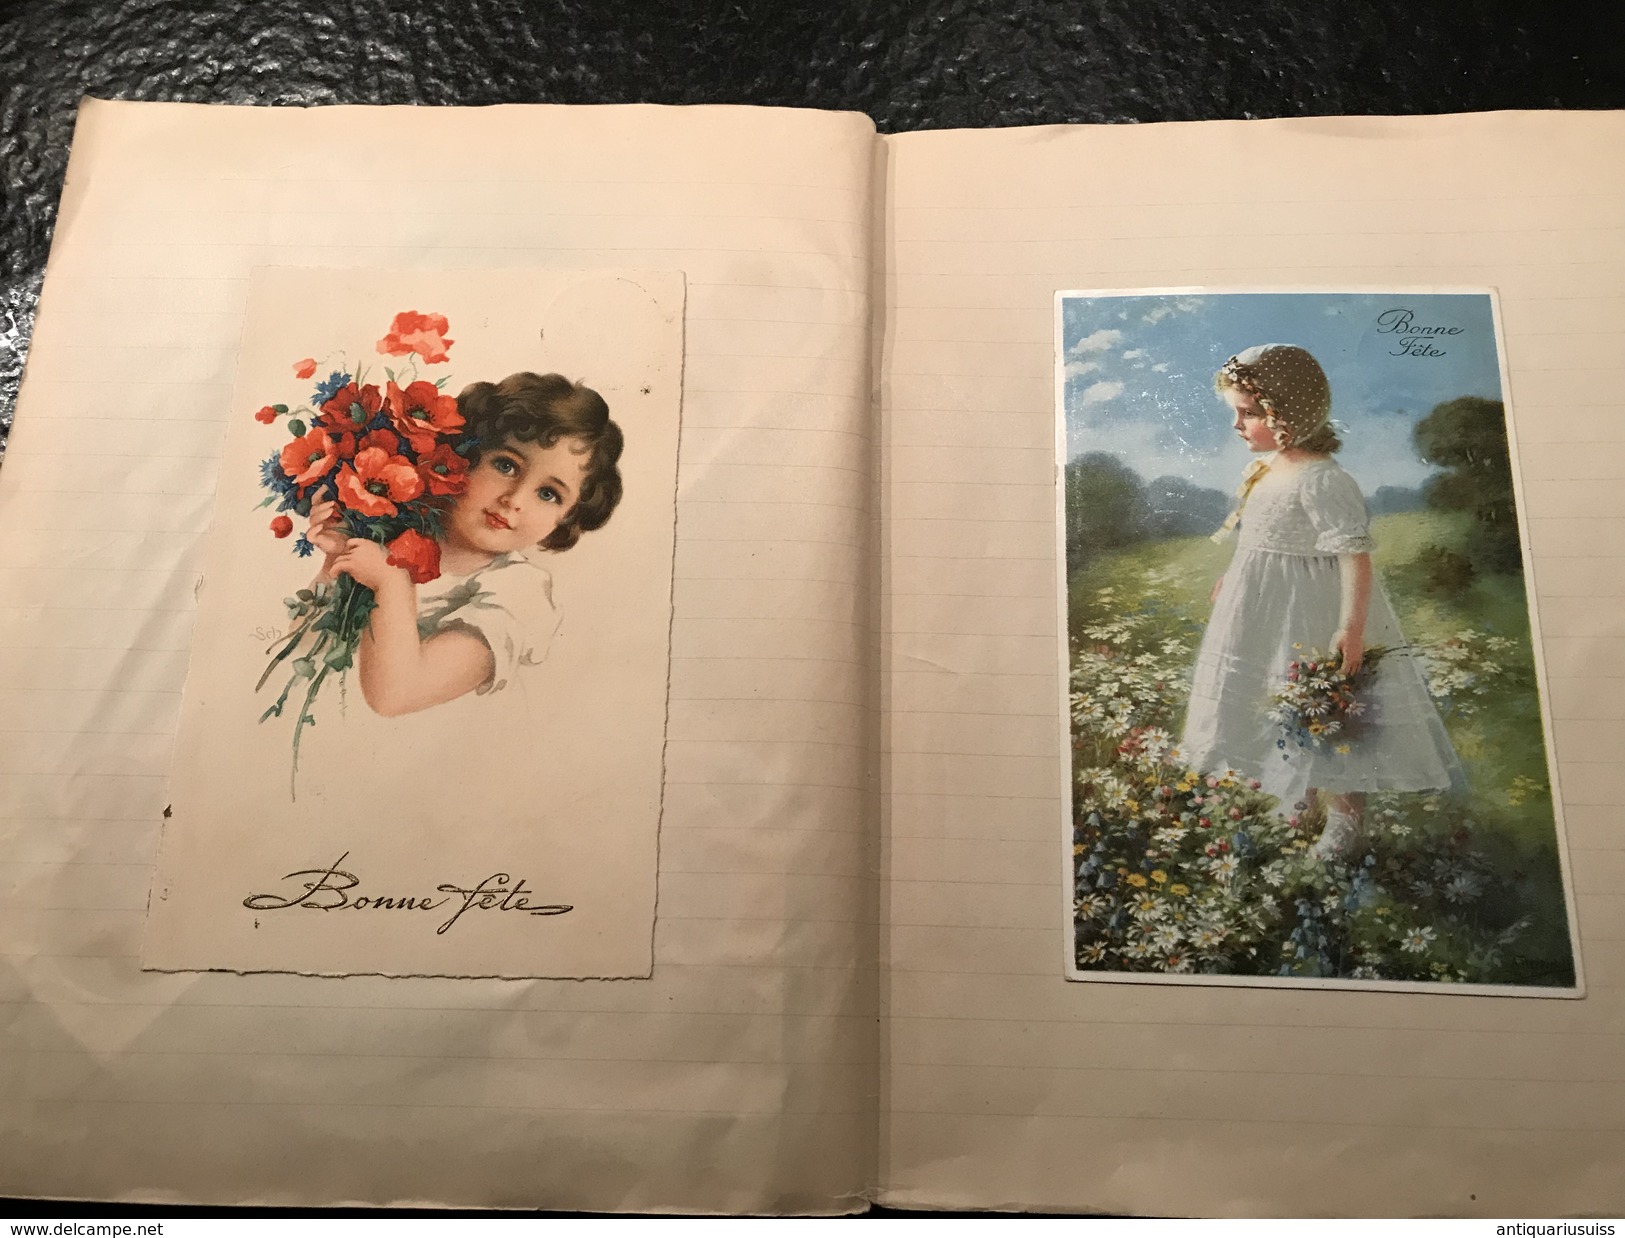 Vieux album - cartes postales - cartons de chocolat - photos de journaux